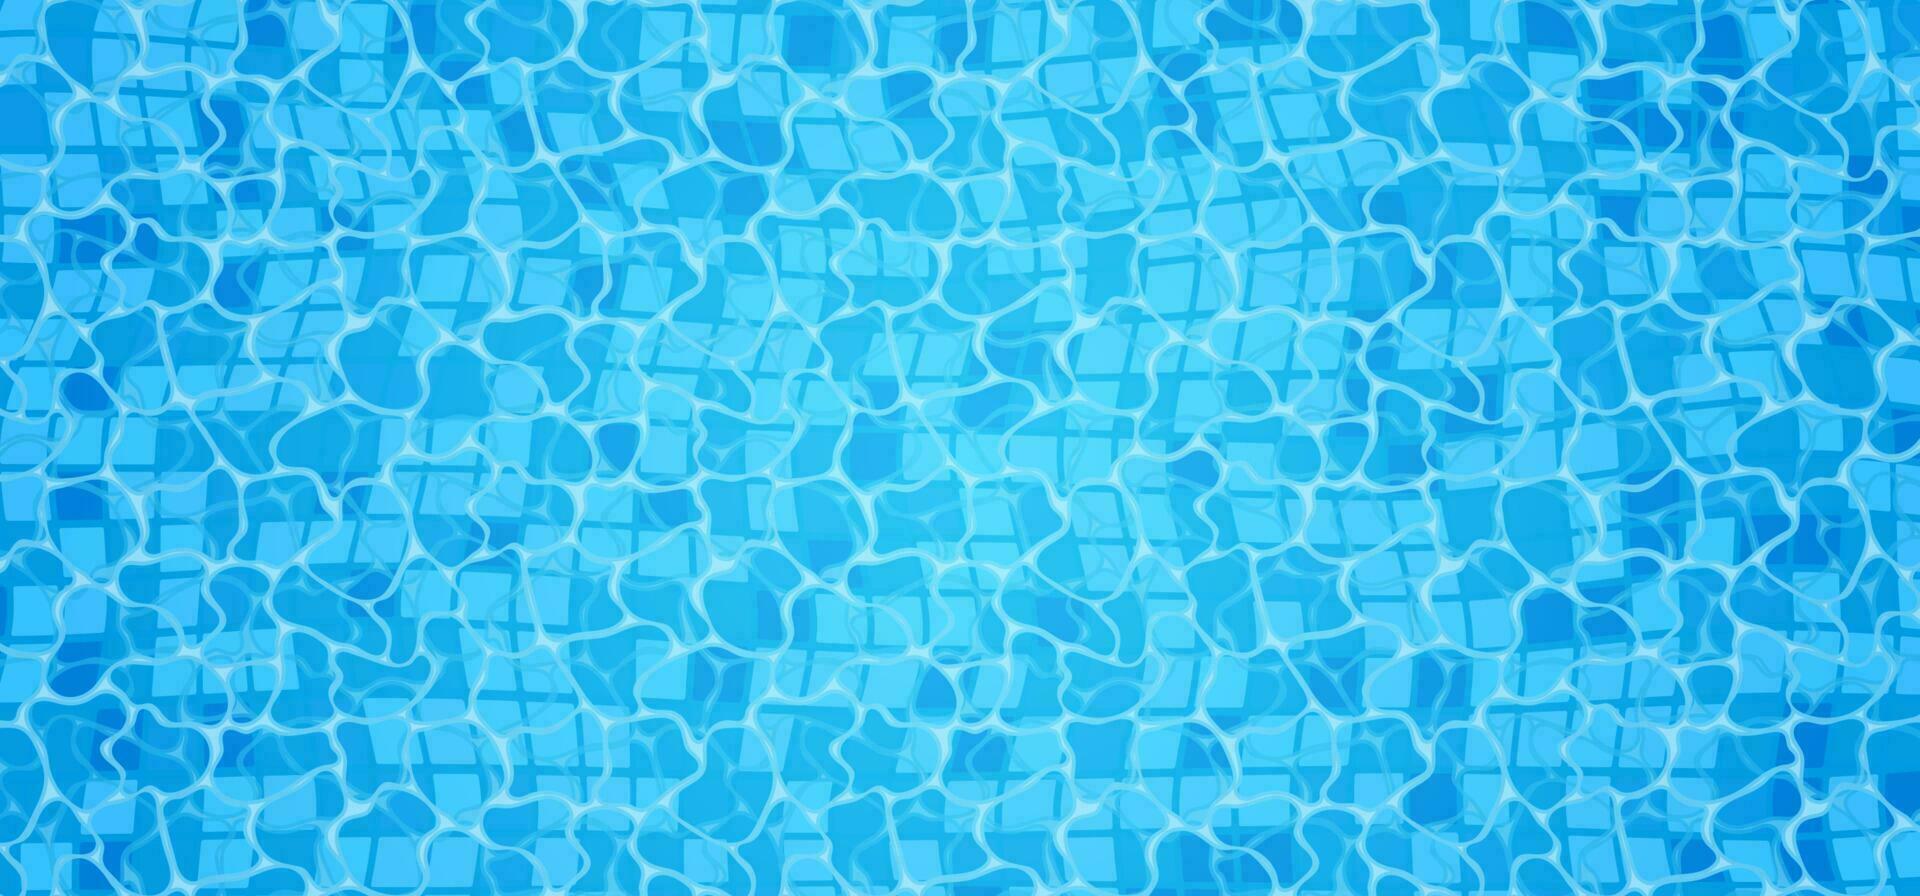 simning slå samman botten kaustik krusning och strömma med vågor bakgrund. sömlös blå krusningar mönster. vektor illustration